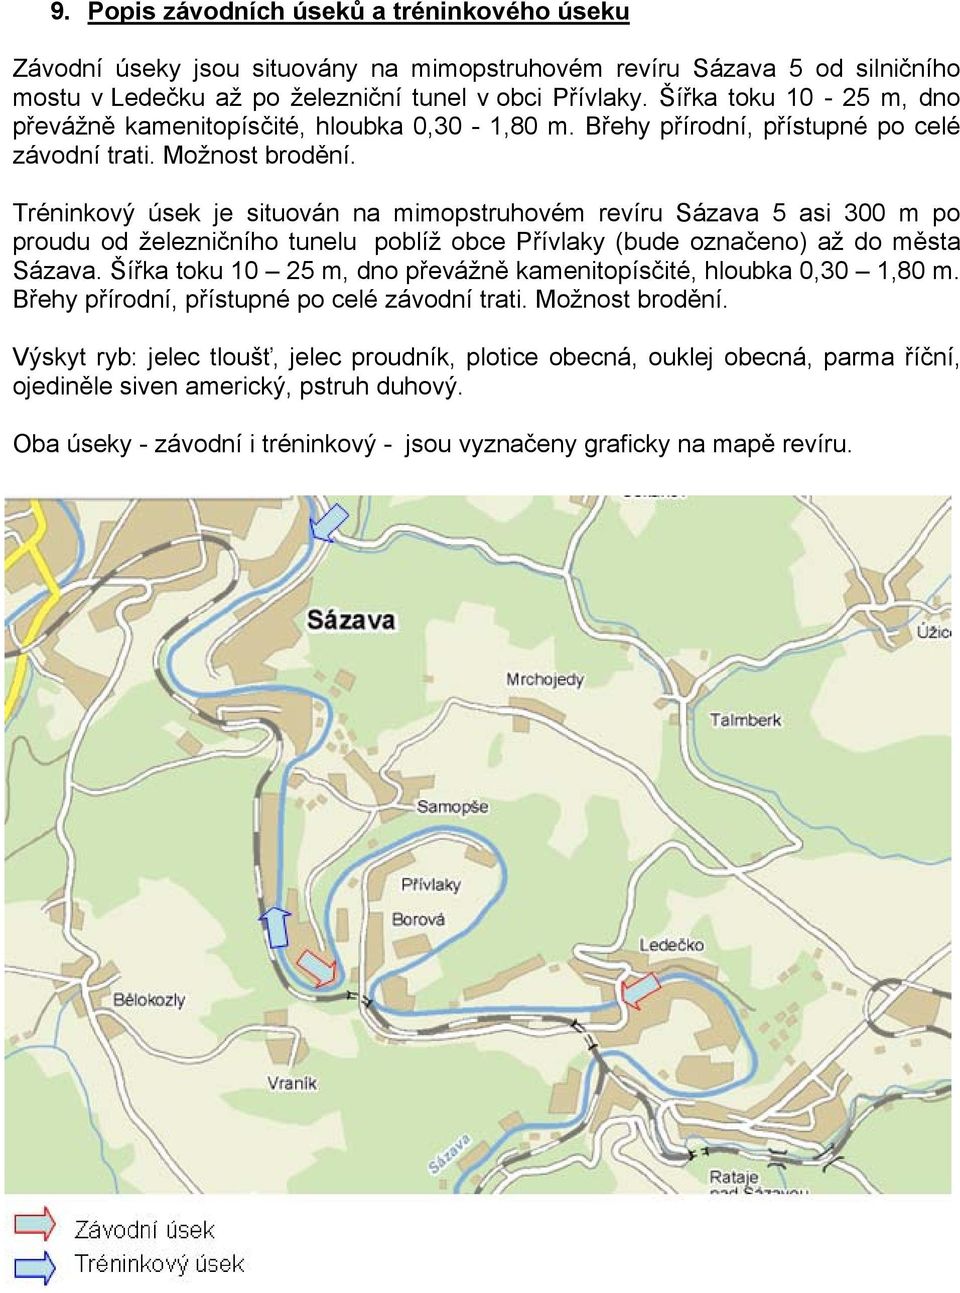 Tréninkový úsek je situován na mimopstruhovém revíru Sázava 5 asi 300 m po proudu od železničního tunelu poblíž obce Přívlaky (bude označeno) až do města Sázava.